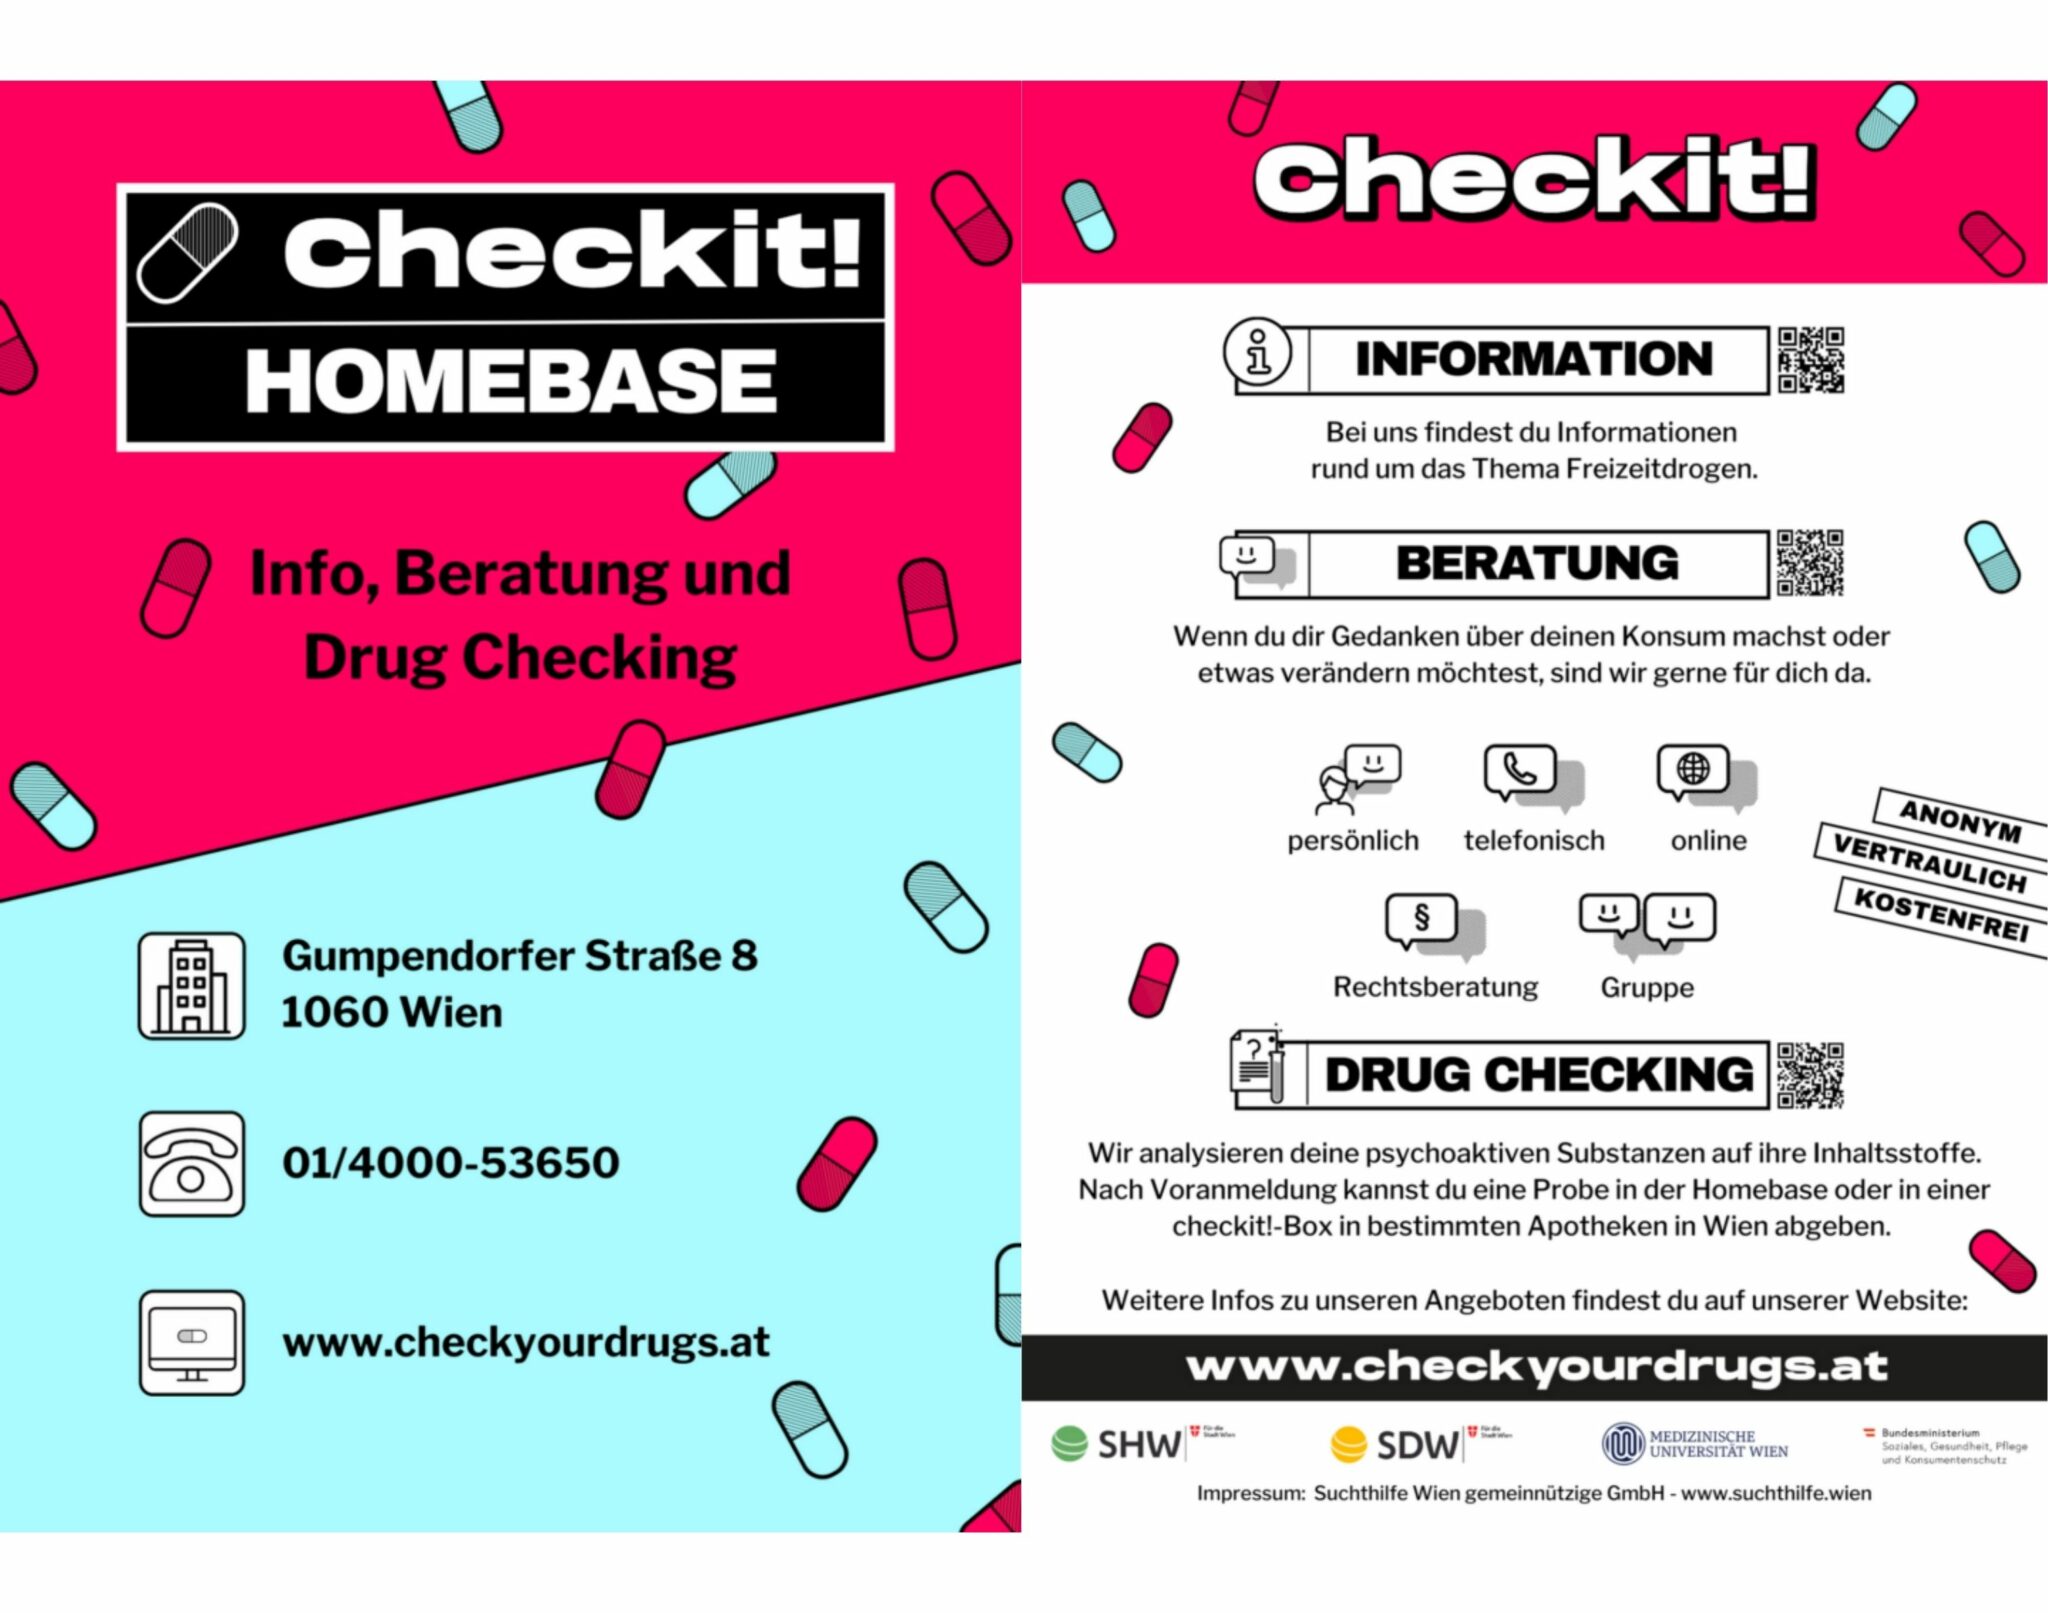 Checkit! Flyer mit Basis-Infos zur HomeBase : Kontaktdaten und Angebote (Beratung und Drug-Checking)